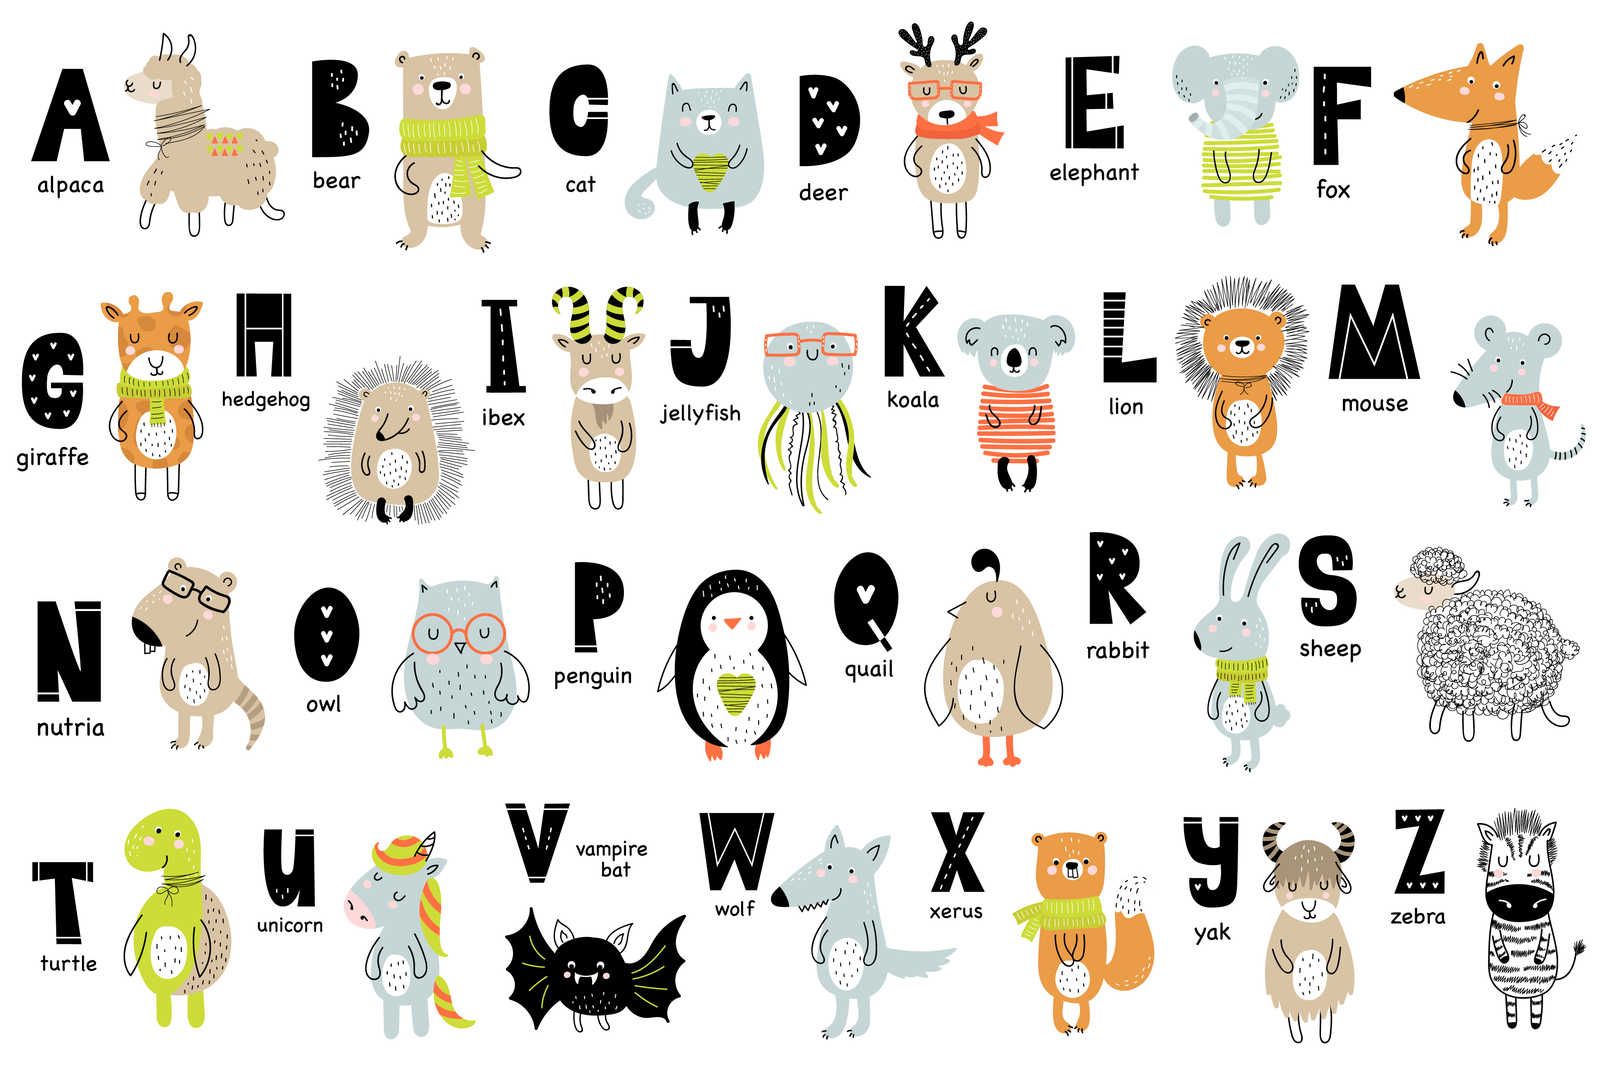             Canvas alfabet met dieren en dierennamen - 90 cm x 60 cm
        